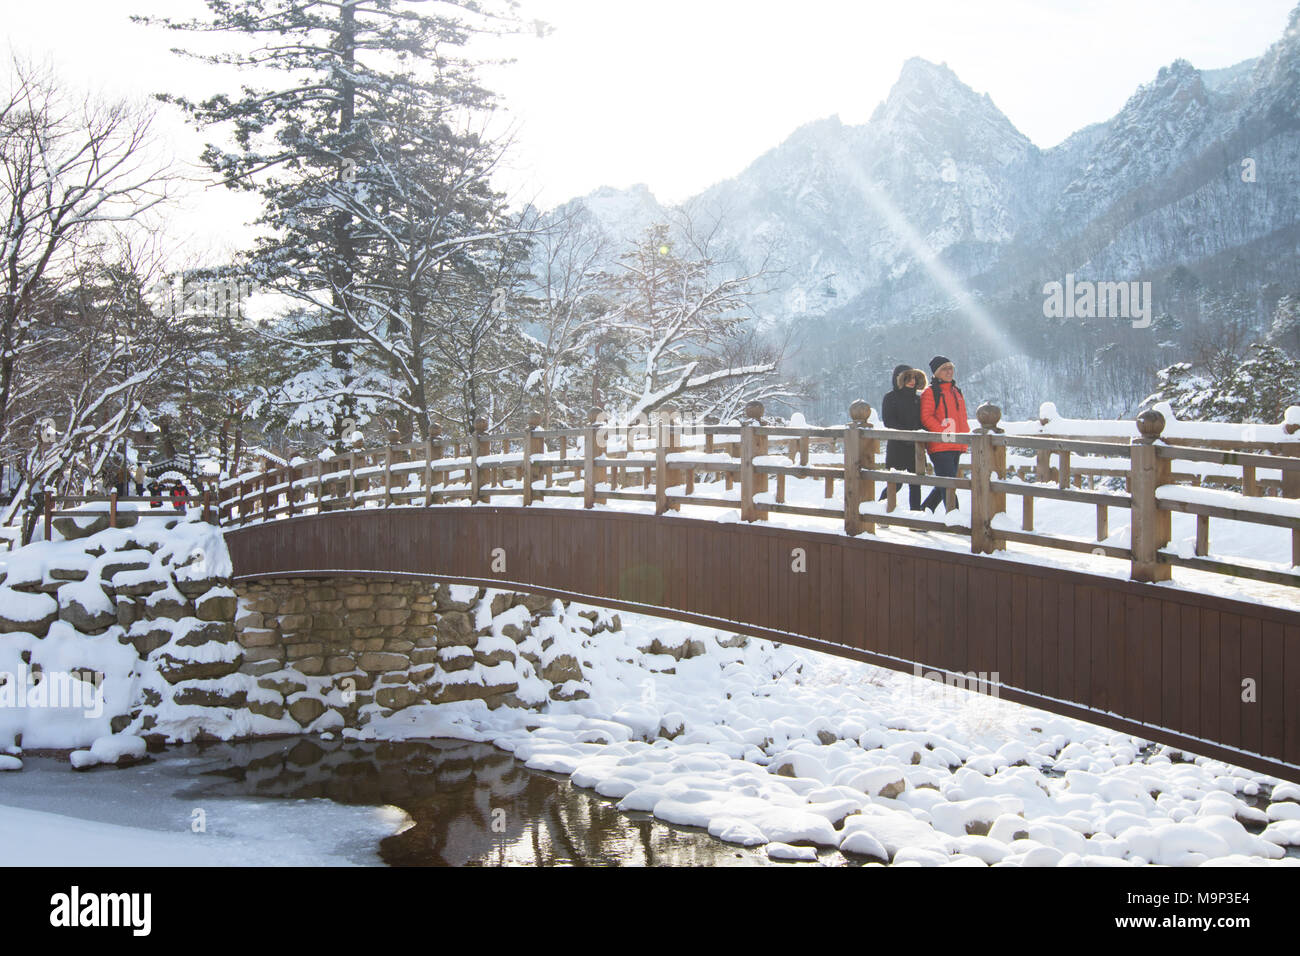 Un uomo e una donna sono a piedi su un ponte in legno Seoraksan National Park, Gangwon-do, la Corea del Sud. Seoraksan è un bellissimo e iconico Parco Nazionale delle montagne vicino Sokcho nella regione del Gangwon-do di Corea del Sud. Il nome si riferisce a balze innevate montagne. Insieme contro il paesaggio sono due templi buddisti: Sinheung-sa e Beakdam-sa. Questa regione è di ospitare le Olimpiadi invernali nel febbraio 2018. Foto Stock